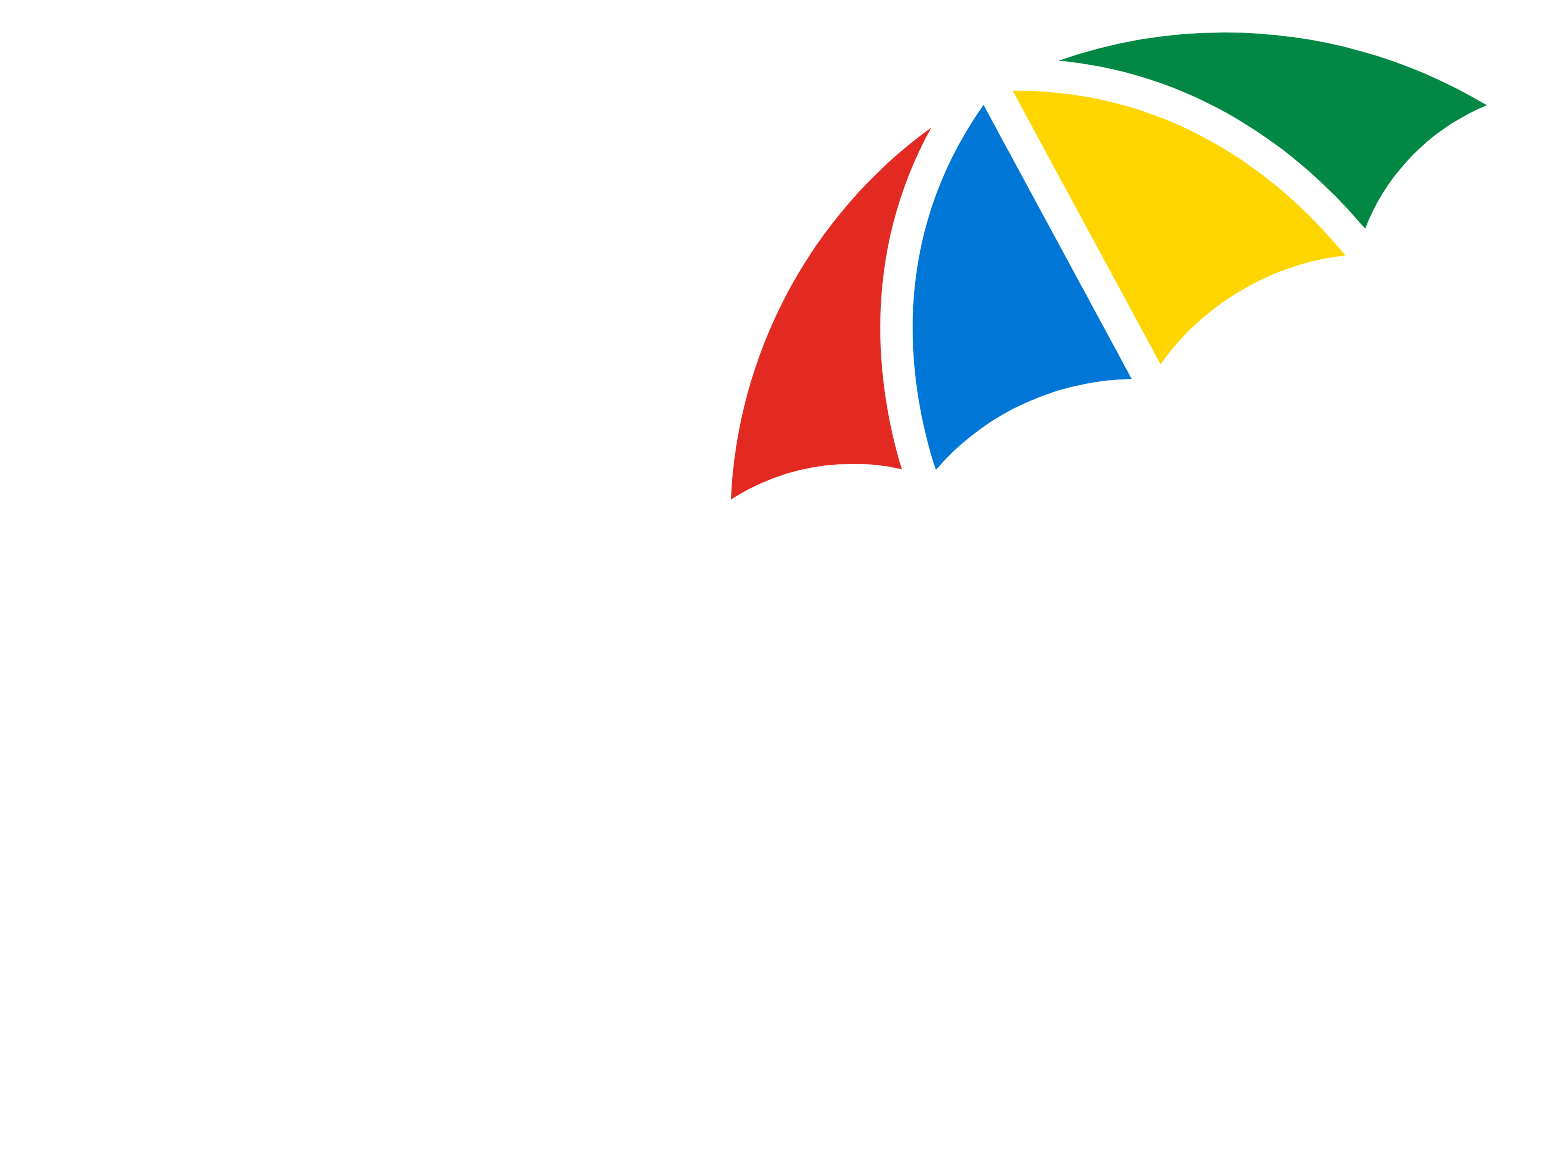 Legal & General logo grand pour les fonds sombres (PNG transparent)